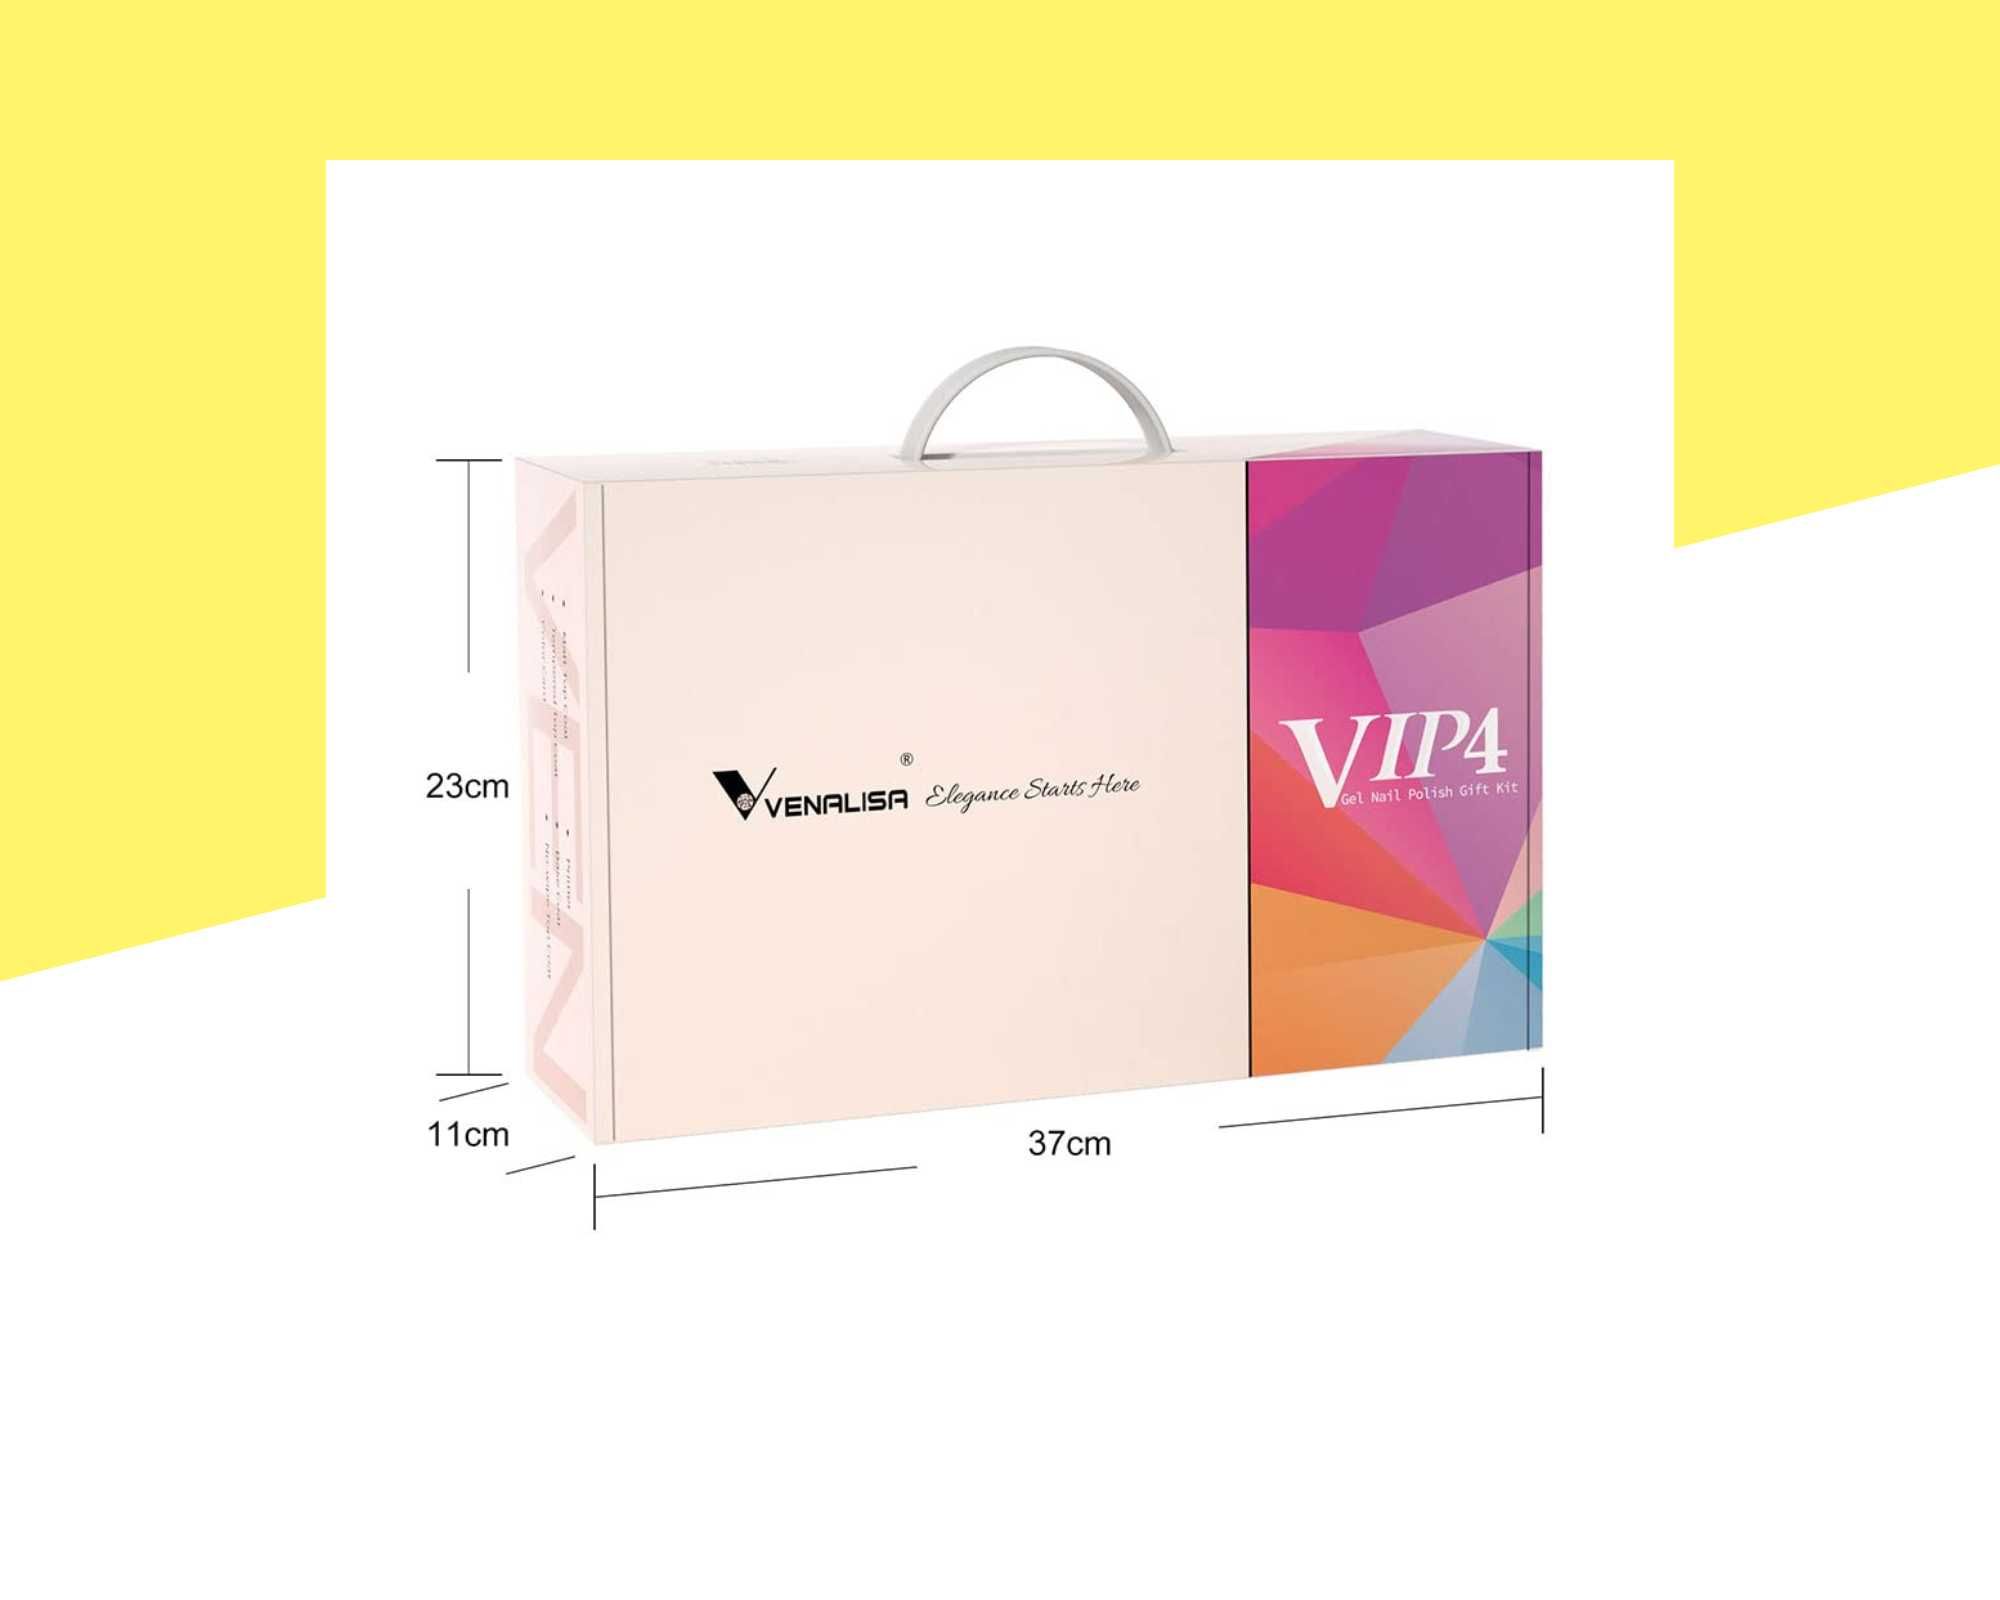 Комплект VIP4 Hema Free гел лакове VENALISA – 60 + 5 и мострена книга